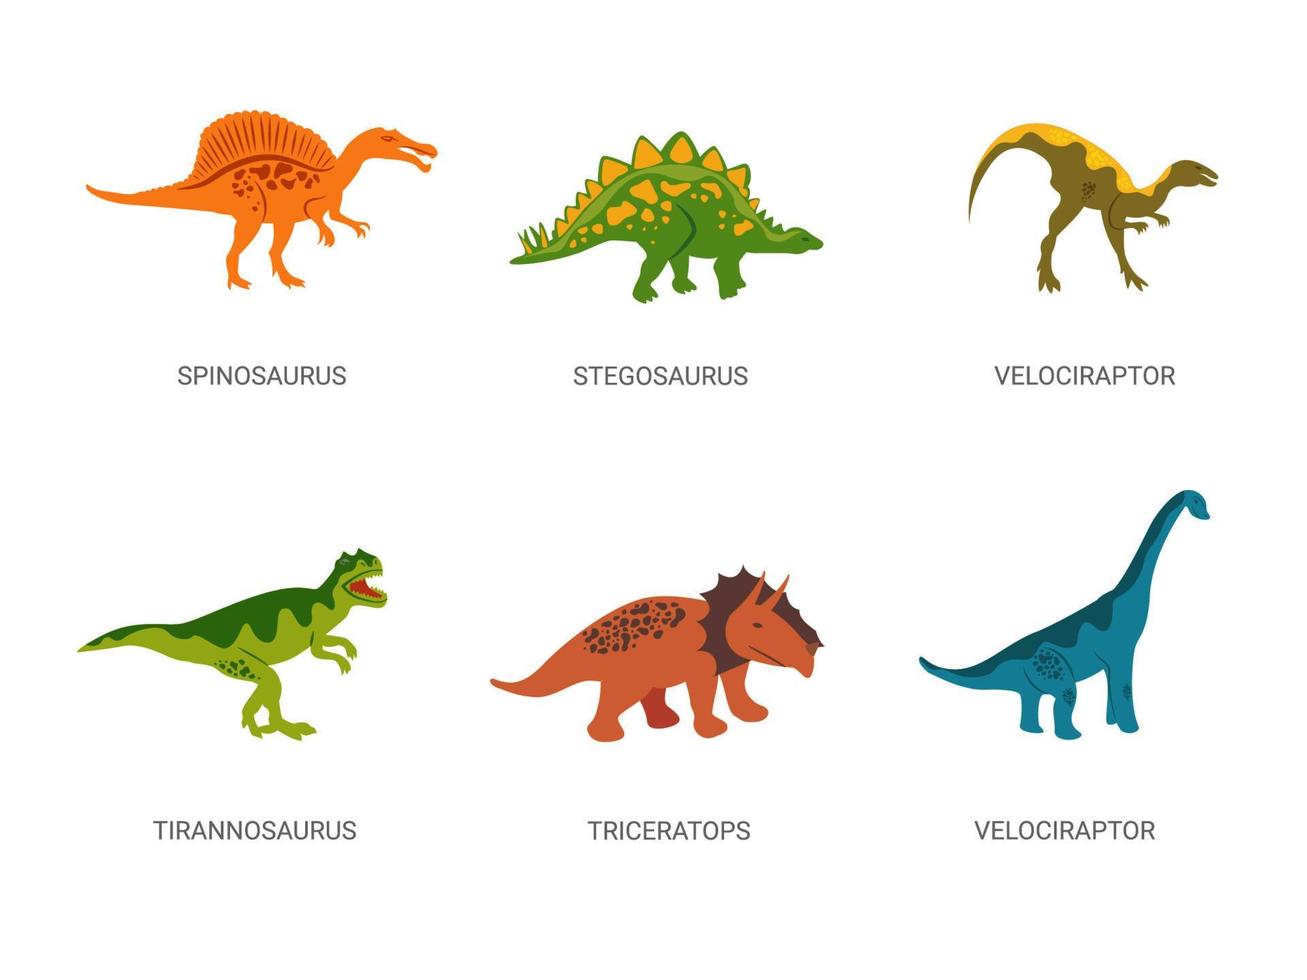 Dinosaurier aus der Jurazeit. kräftiger roter Spinosaurus mit grünem pflanzenfressendem Stegosaurus. vektor